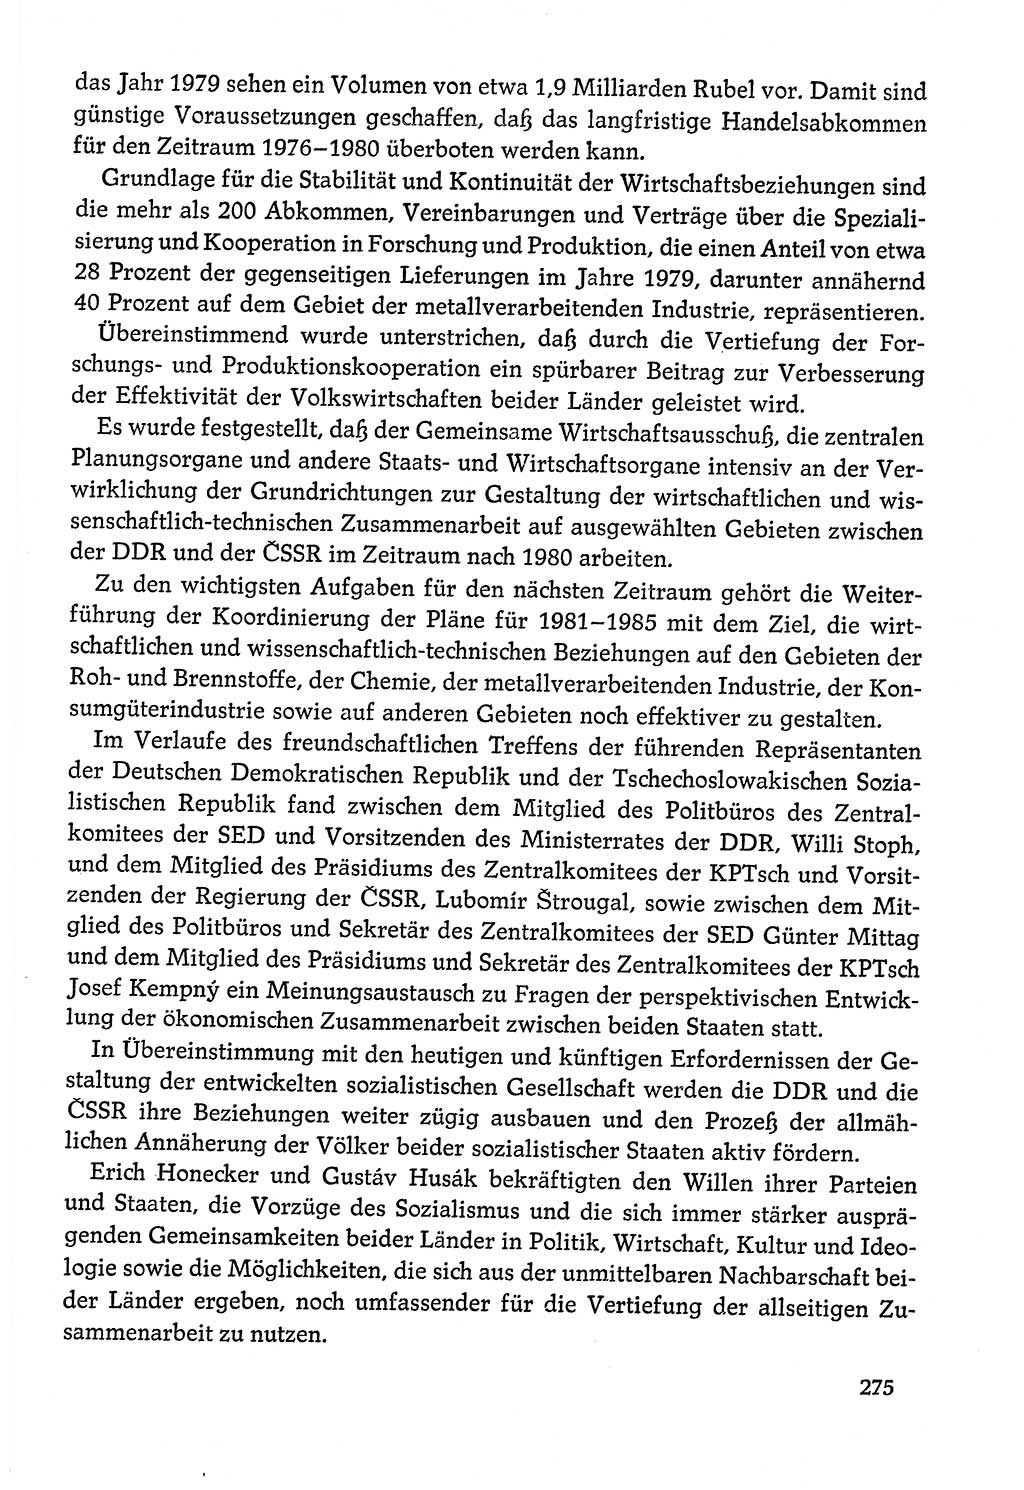 Dokumente der Sozialistischen Einheitspartei Deutschlands (SED) [Deutsche Demokratische Republik (DDR)] 1978-1979, Seite 275 (Dok. SED DDR 1978-1979, S. 275)